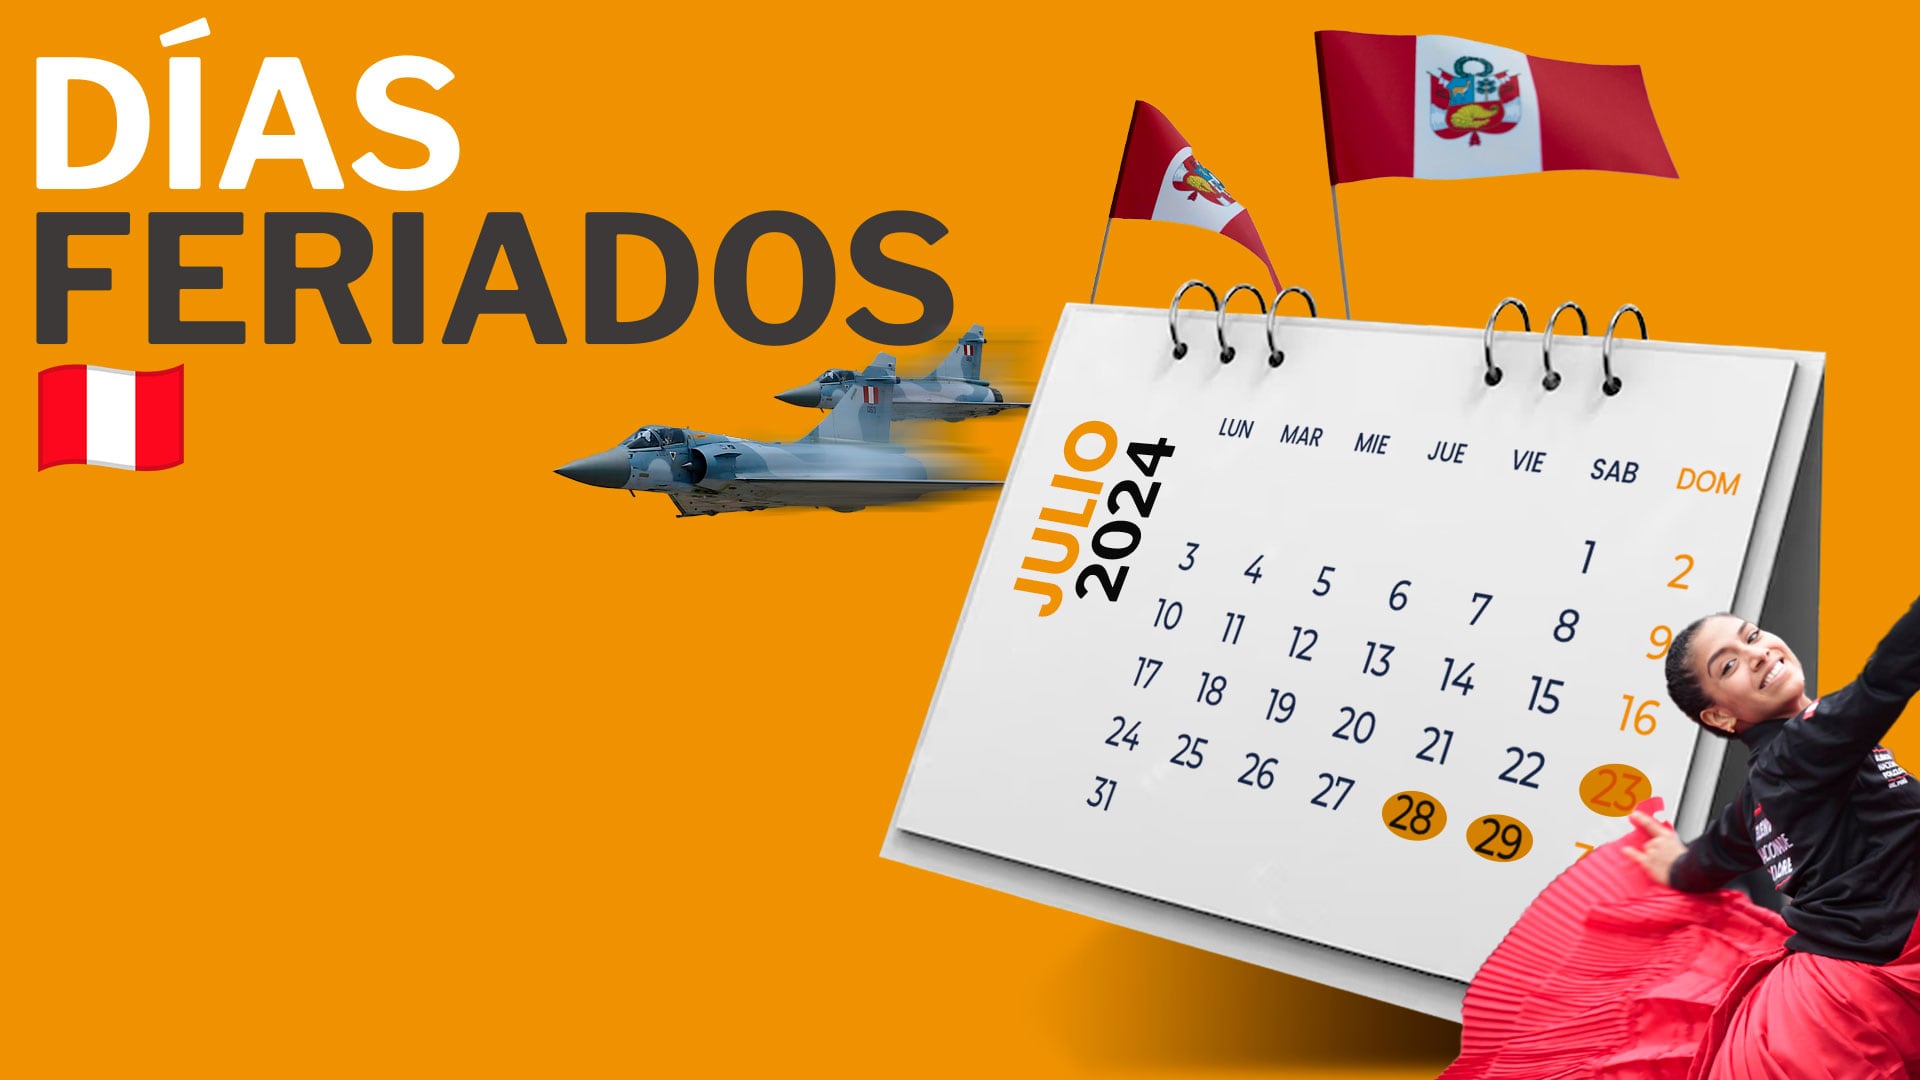 Estas son las fechas marcadas en el calendario como días remunerados no laborables en el mes de julio en Perú